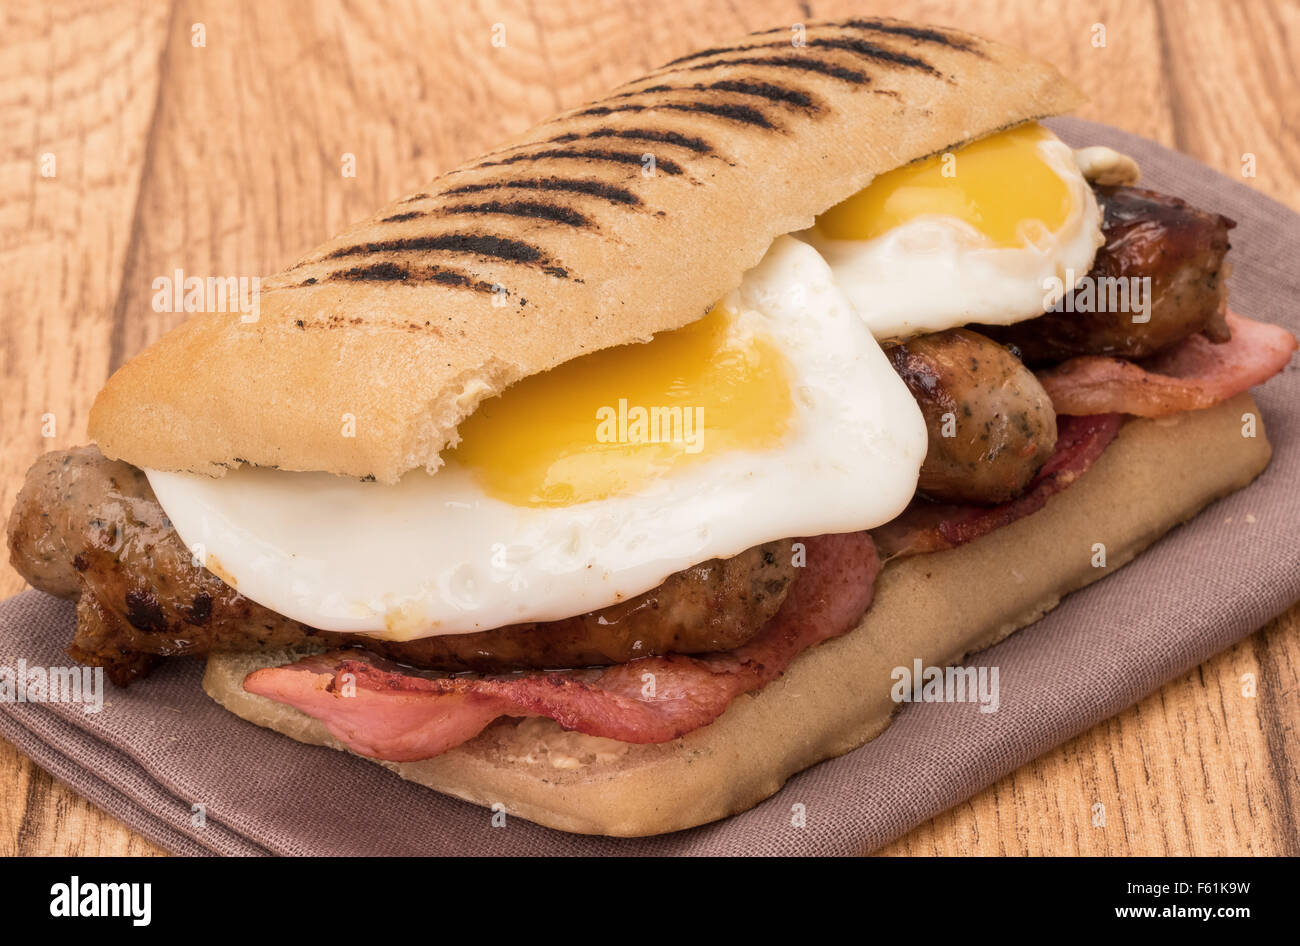 Panini desayuno con bacon, salchichas y huevos fritos Foto de stock